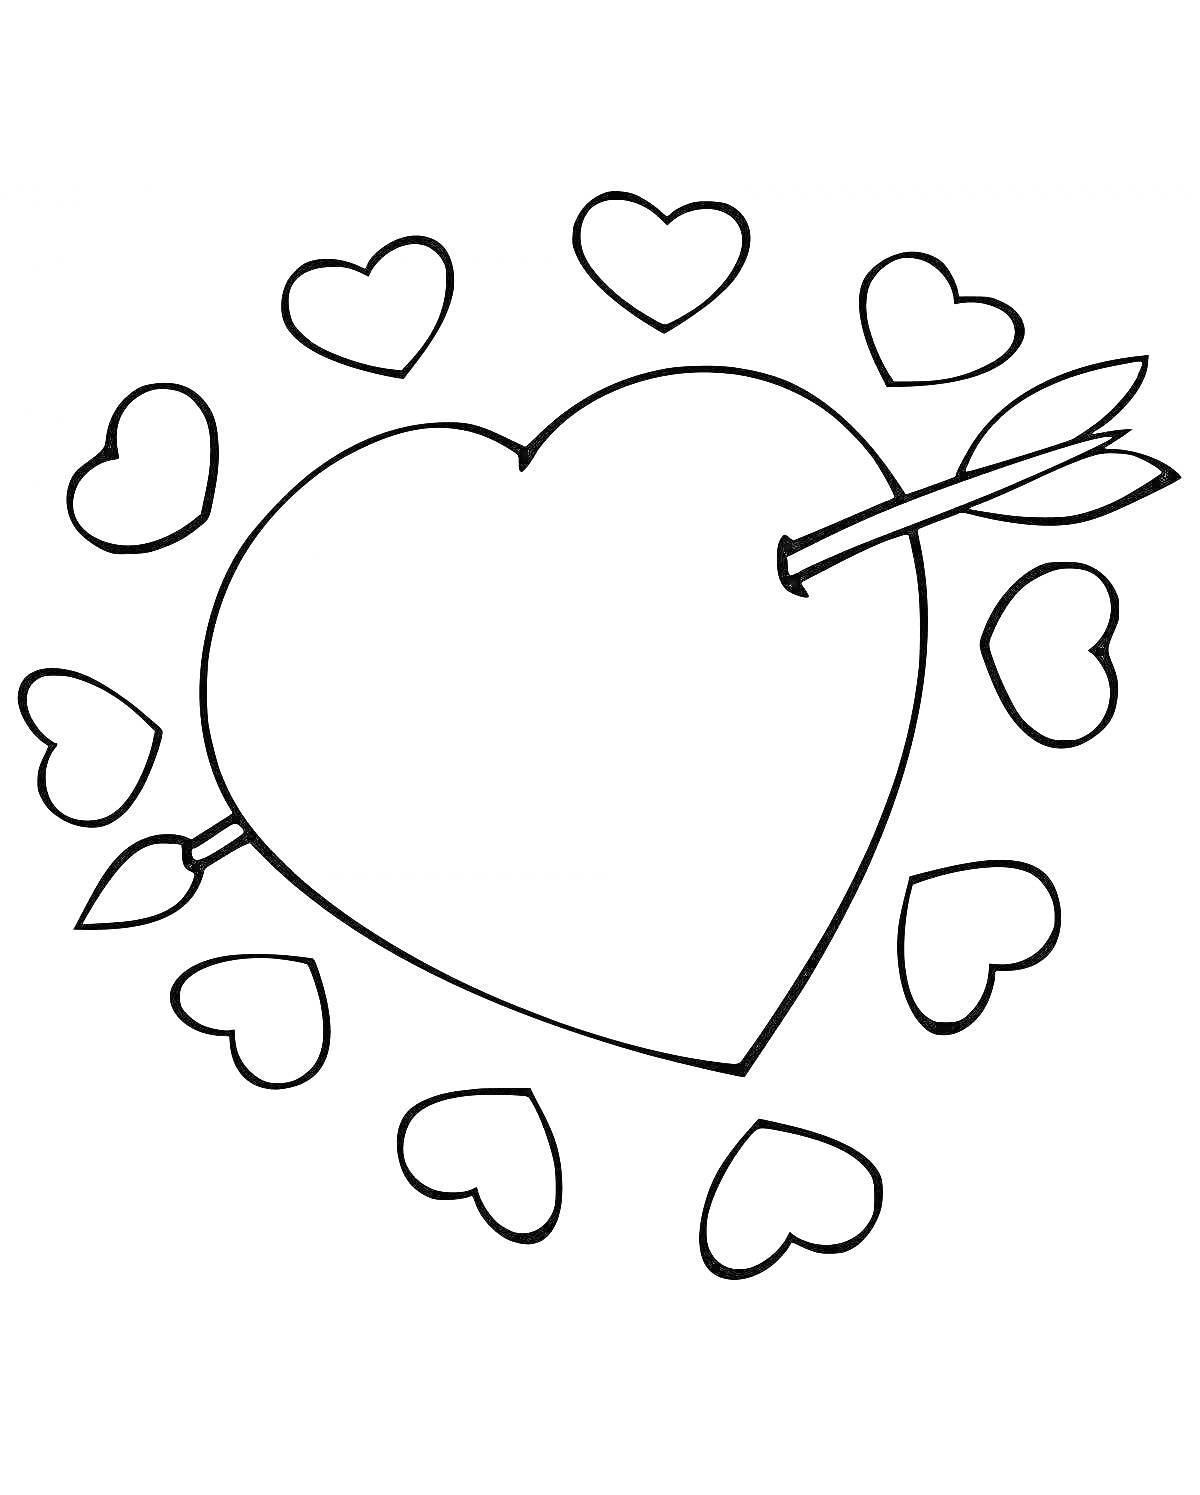 Раскраска Большое сердце с тремя стрелами и окруженное маленькими сердечками